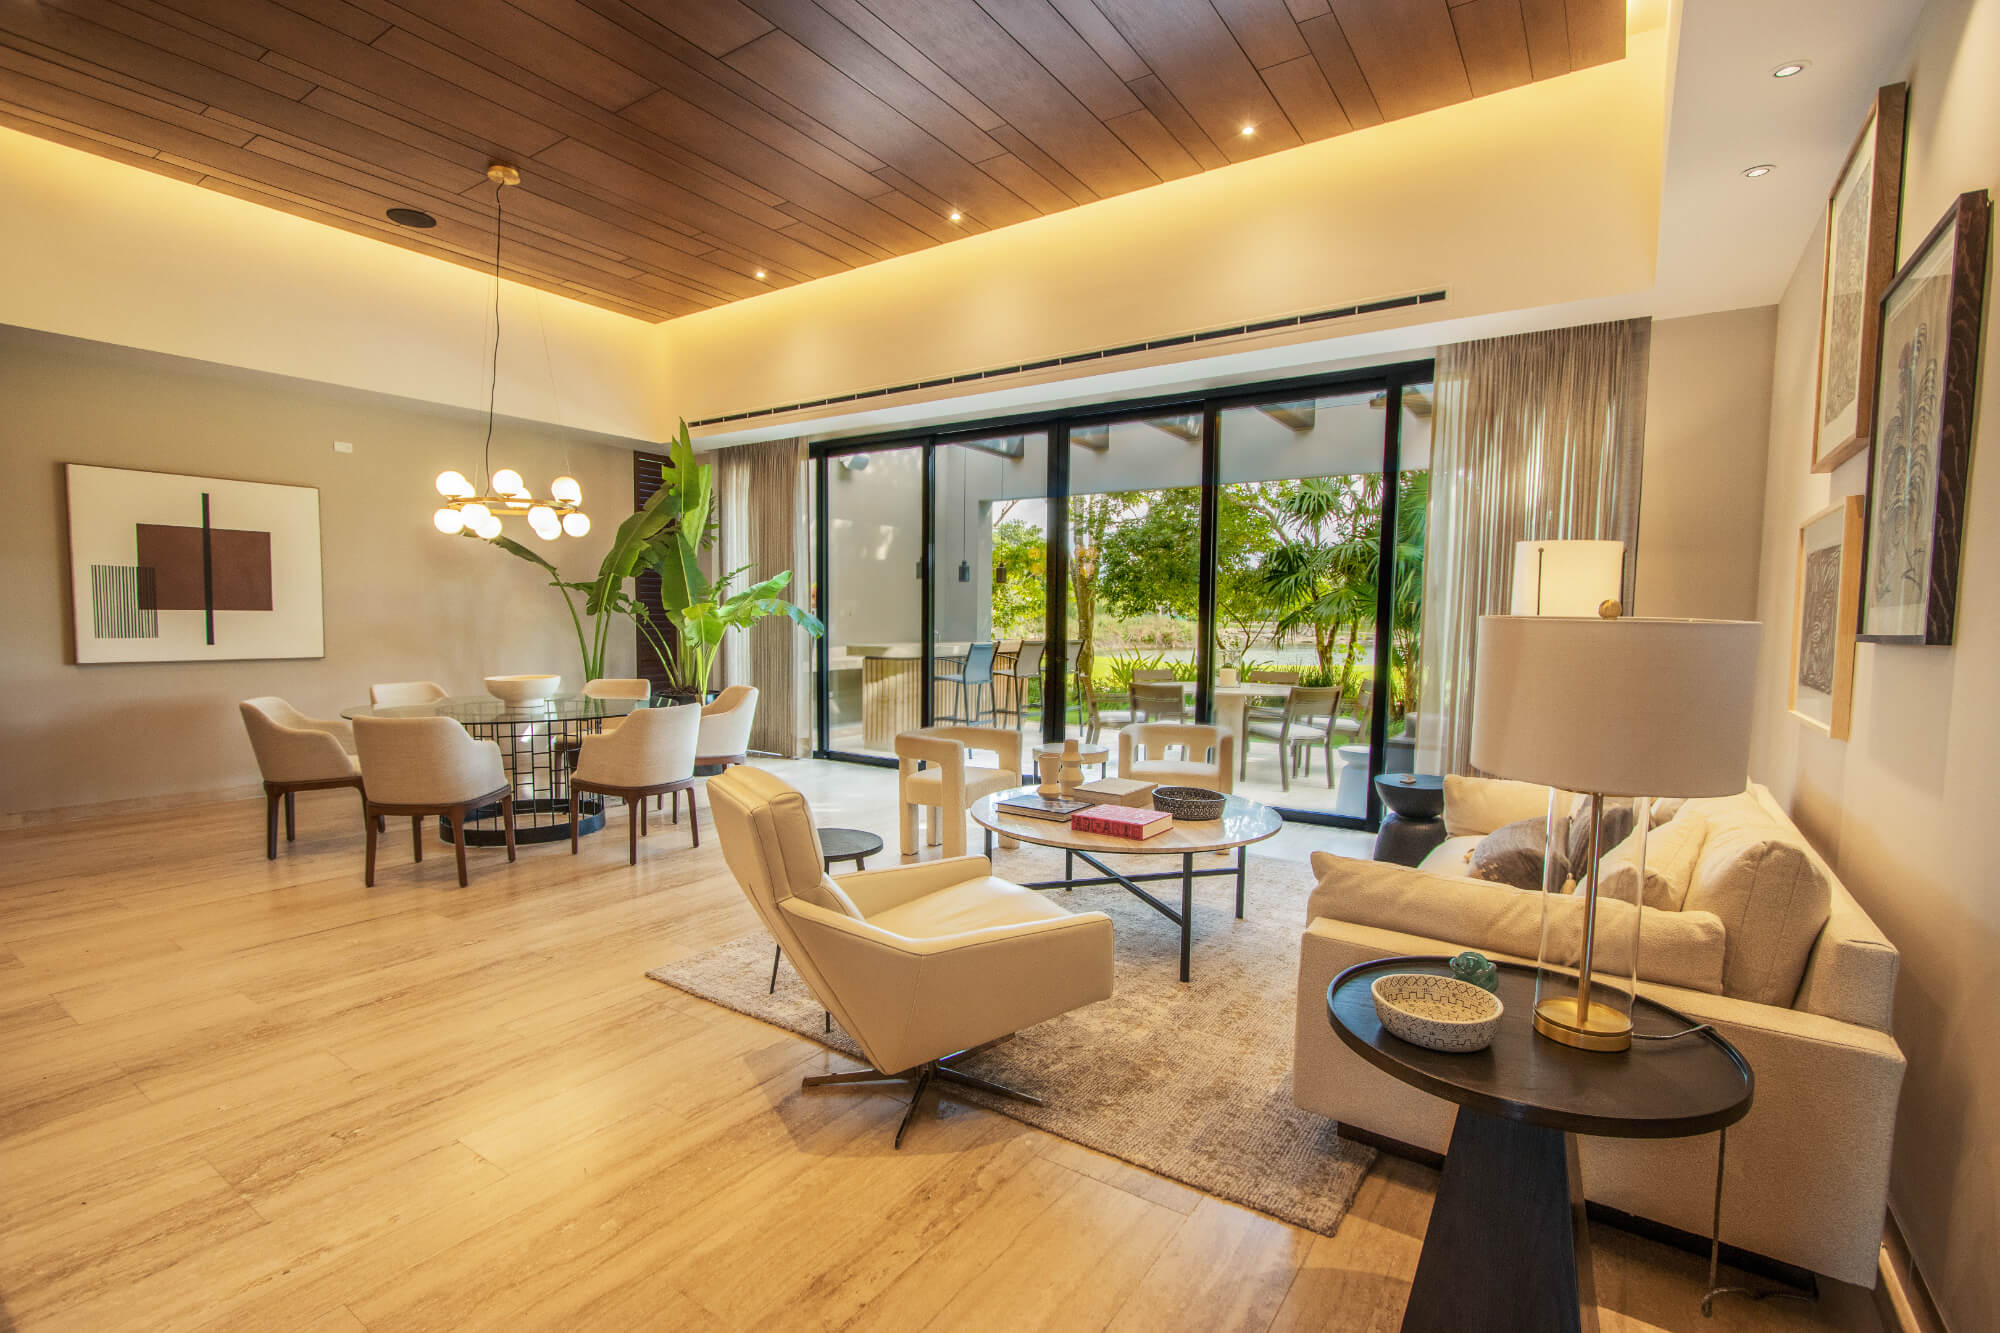 Casa con alberca privada en residencial con campo de golf y casa club con amenidades, Yucatan Country Club, en venta en Mérida.